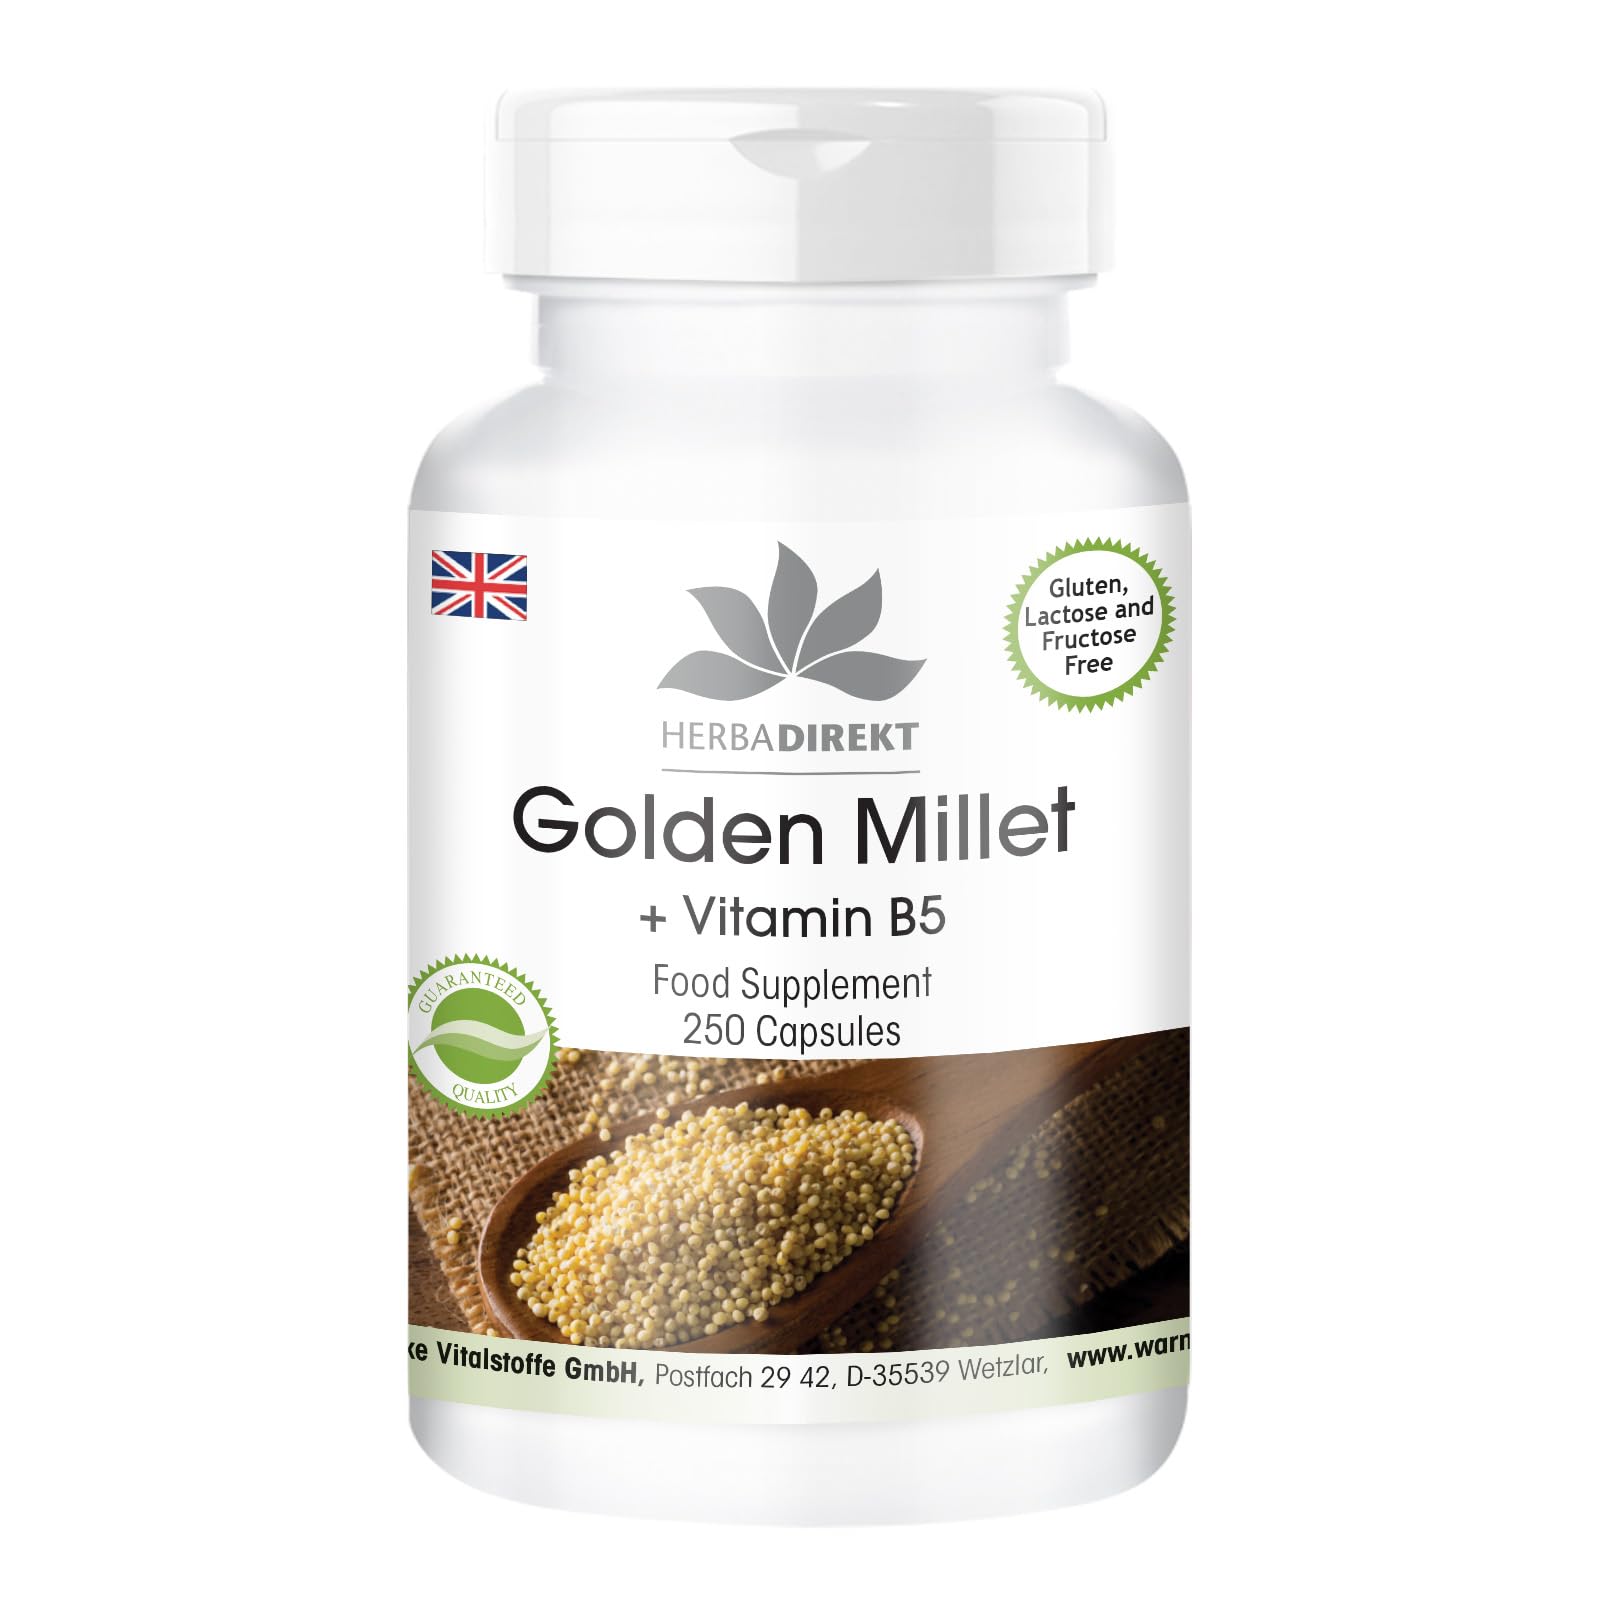 Golden Millet + Vitamin B5 - high-dose - Vegan - 250 Capsules